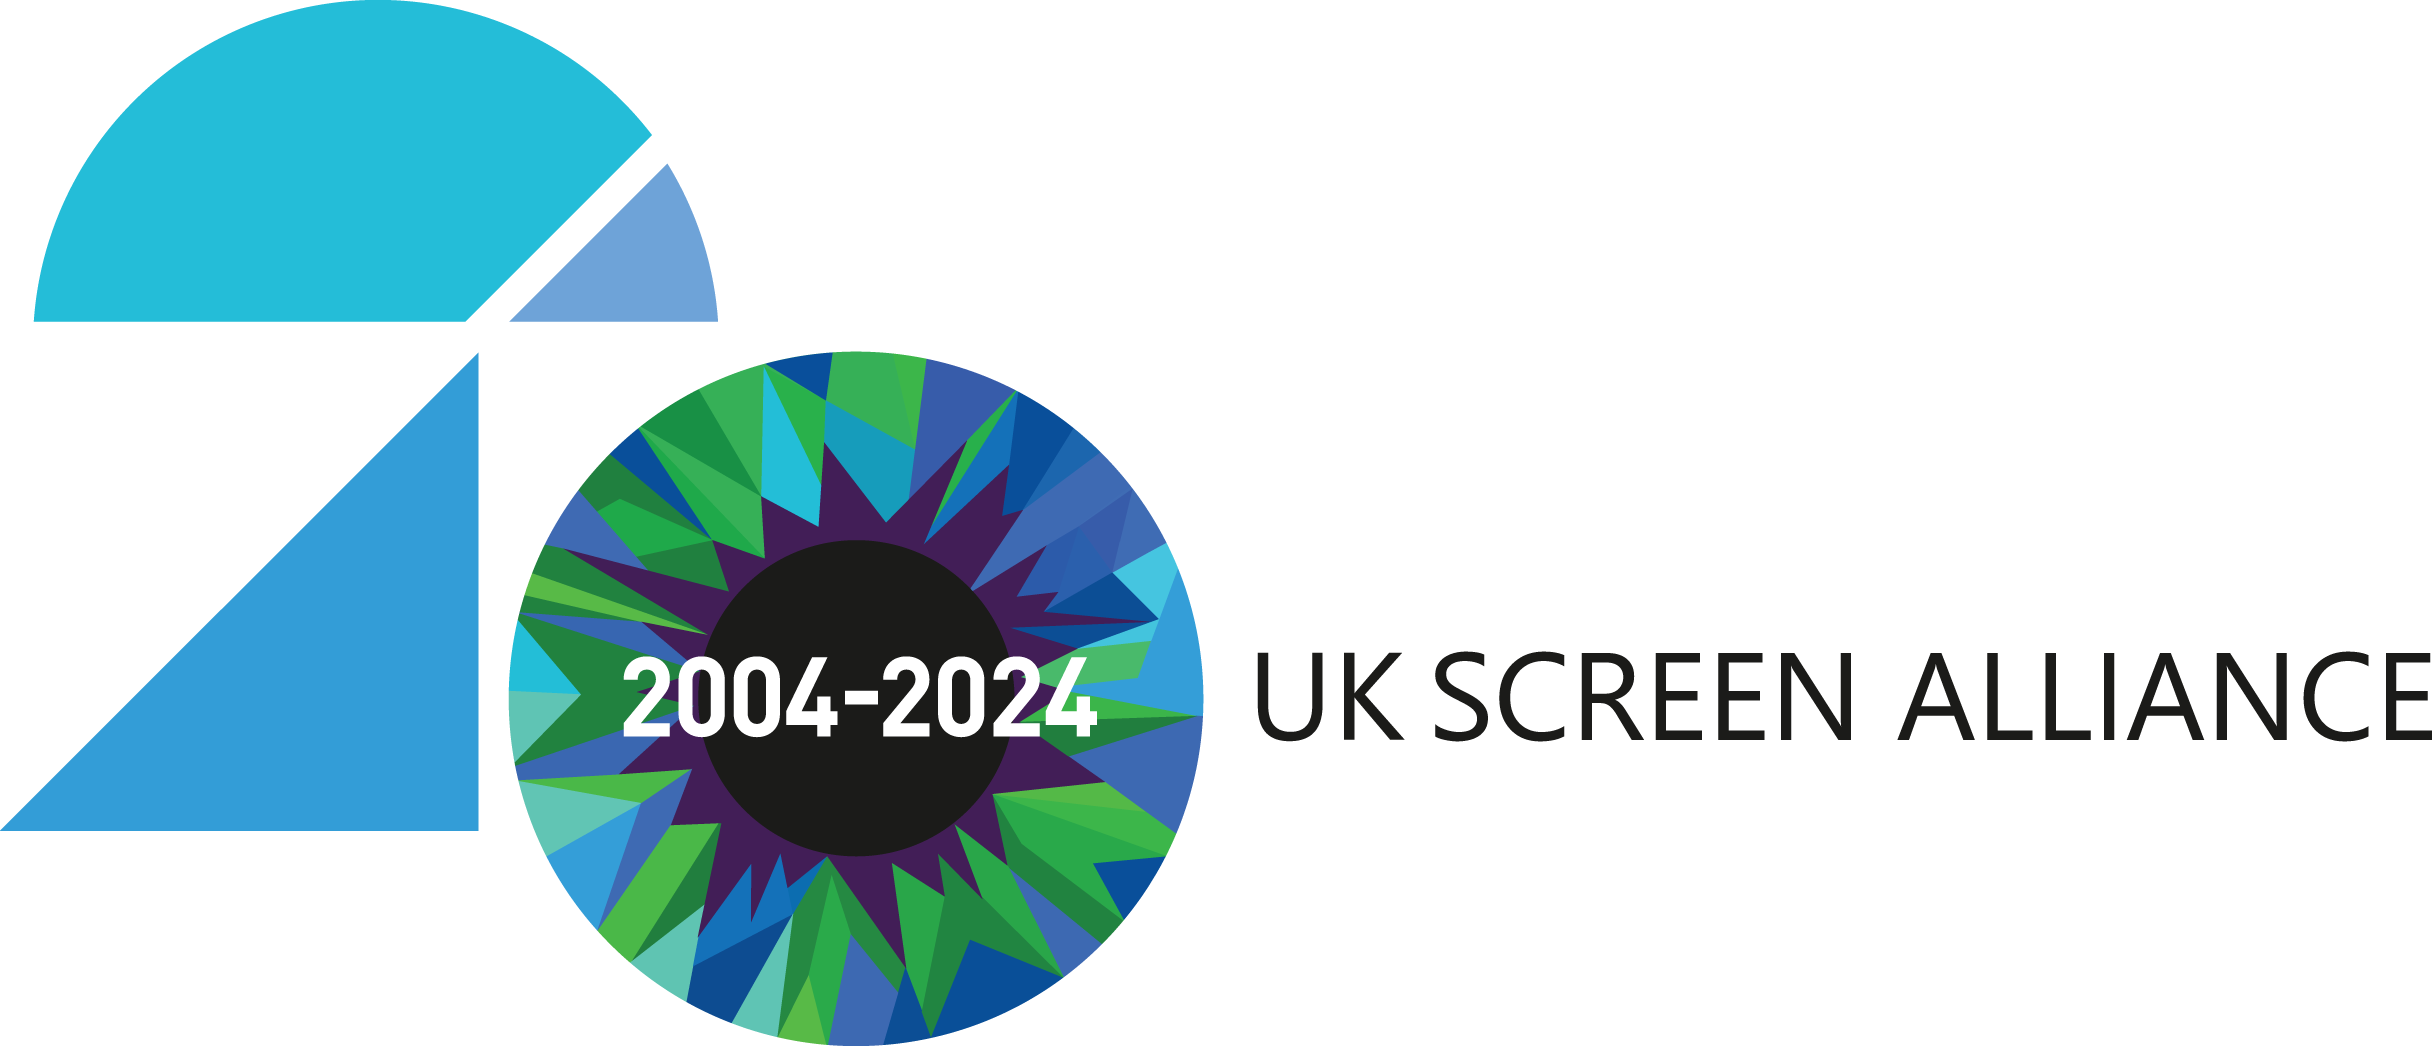 UK Screen Alliance